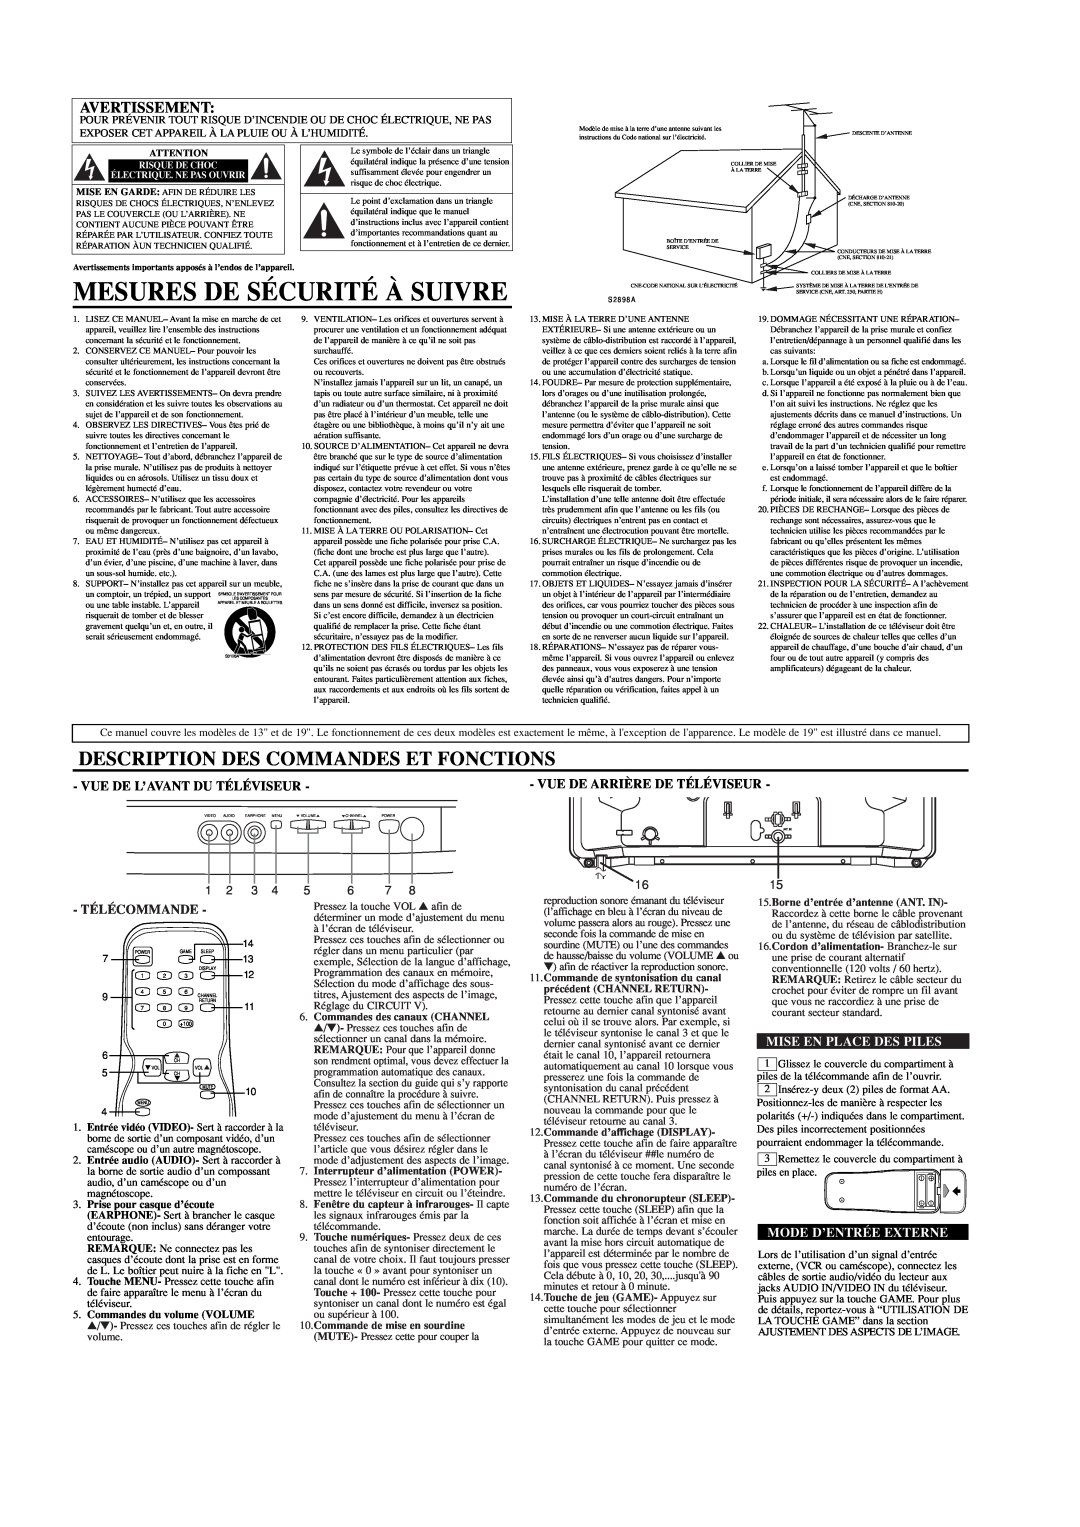 Sylvania C6413TD, C5419TD Mesures De Sécurité À Suivre, Description Des Commandes Et Fonctions, Avertissement, 1 2 3 